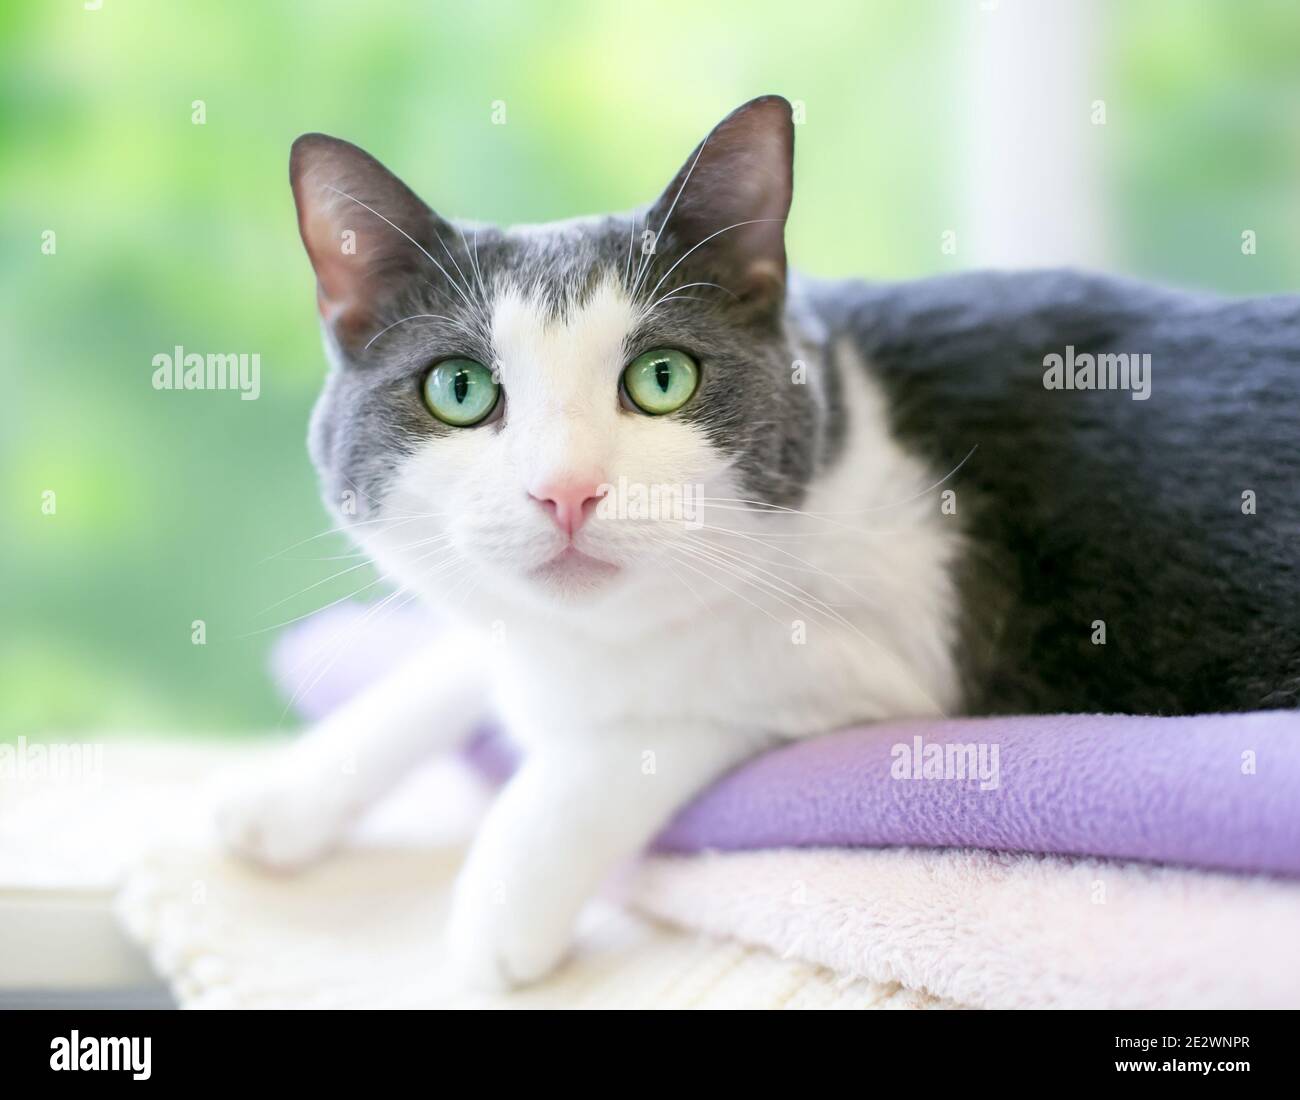 Un chat court gris et blanc avec des yeux verts couchés sur une couverture et en regardant l'appareil photo Banque D'Images